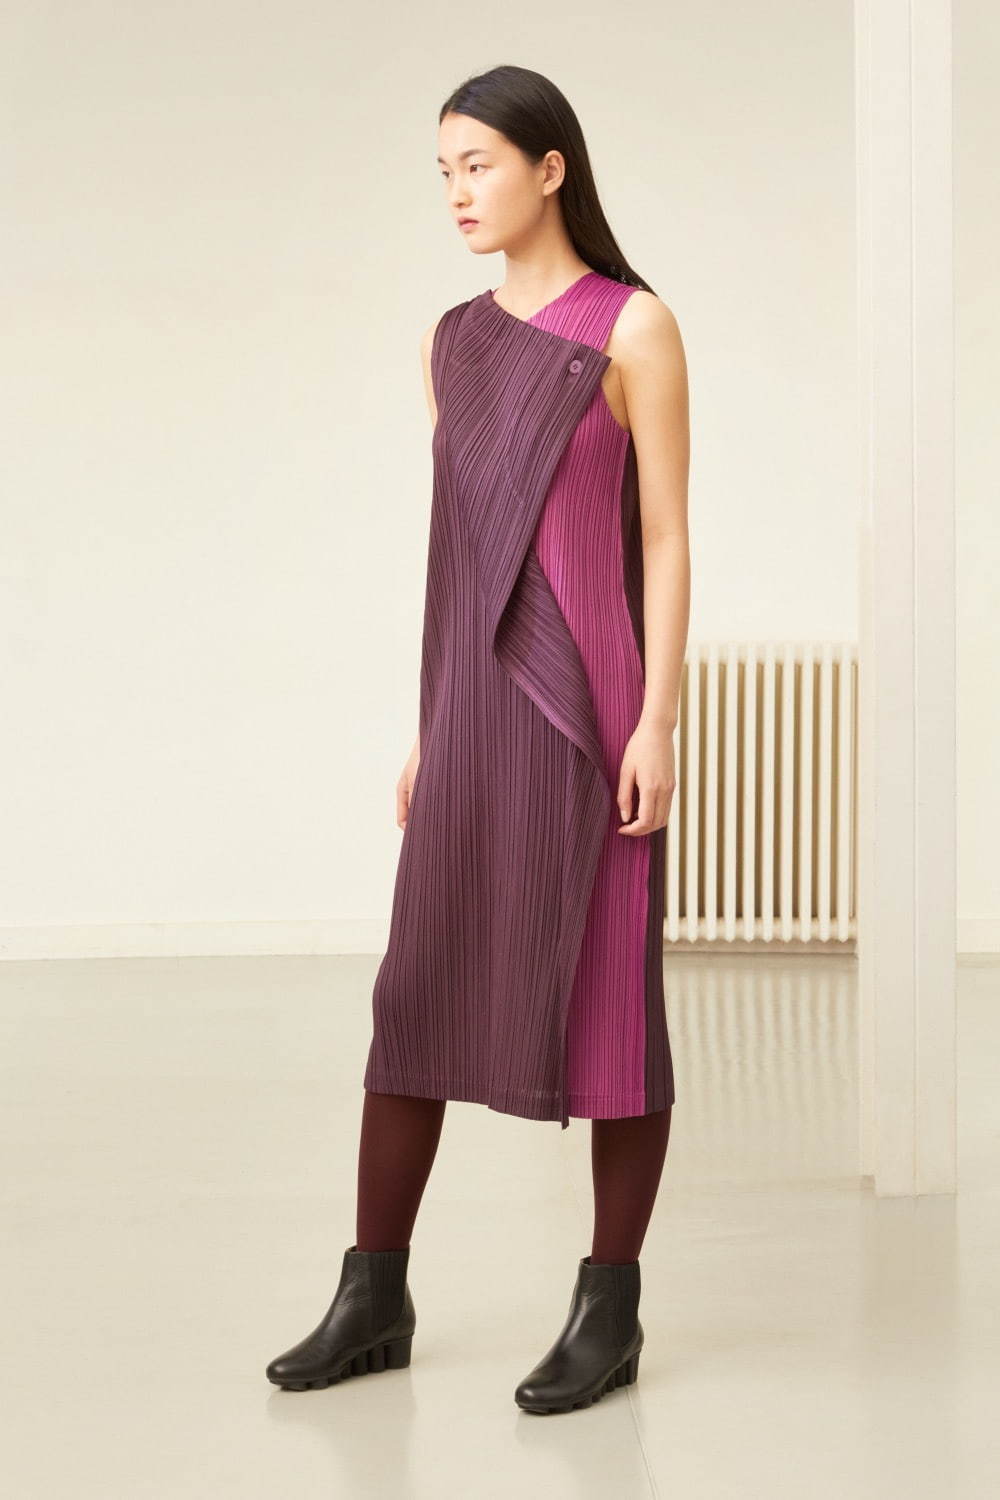 プリーツ プリーズ イッセイ ミヤケのワンピース コート 夜の色 をイメージ ファッションプレス